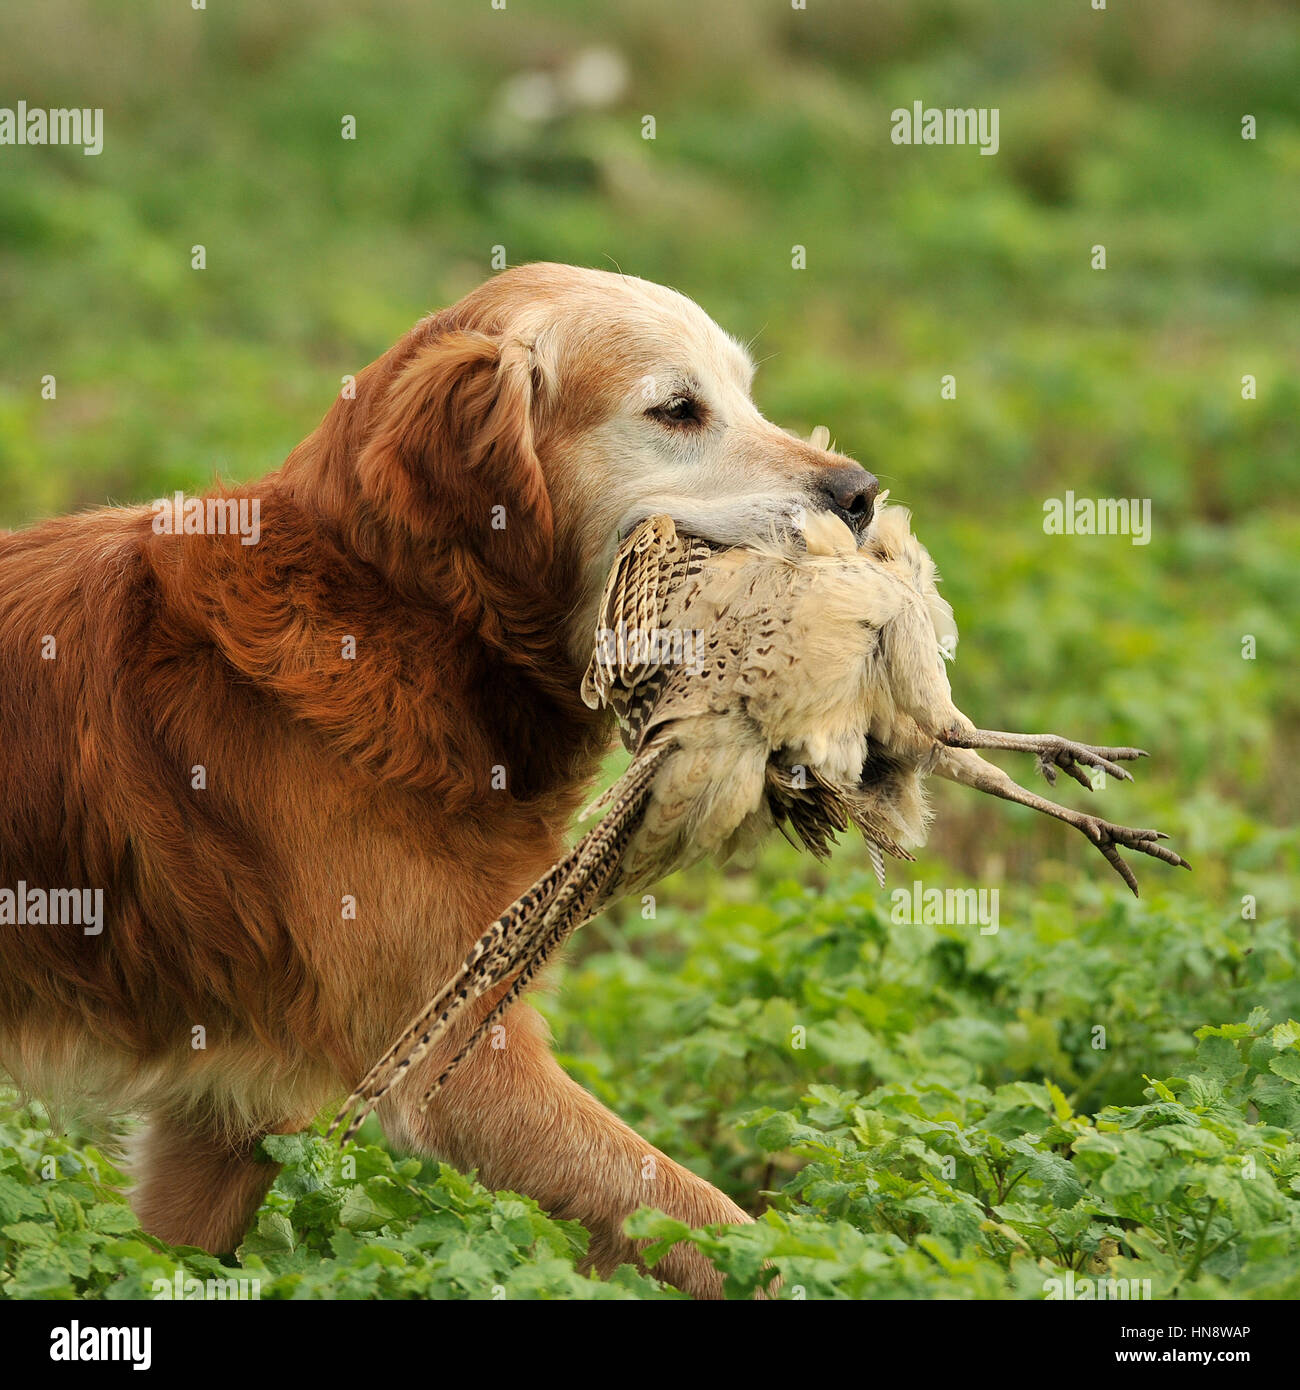 golden retriever retrieving a pheasant Stock Photo